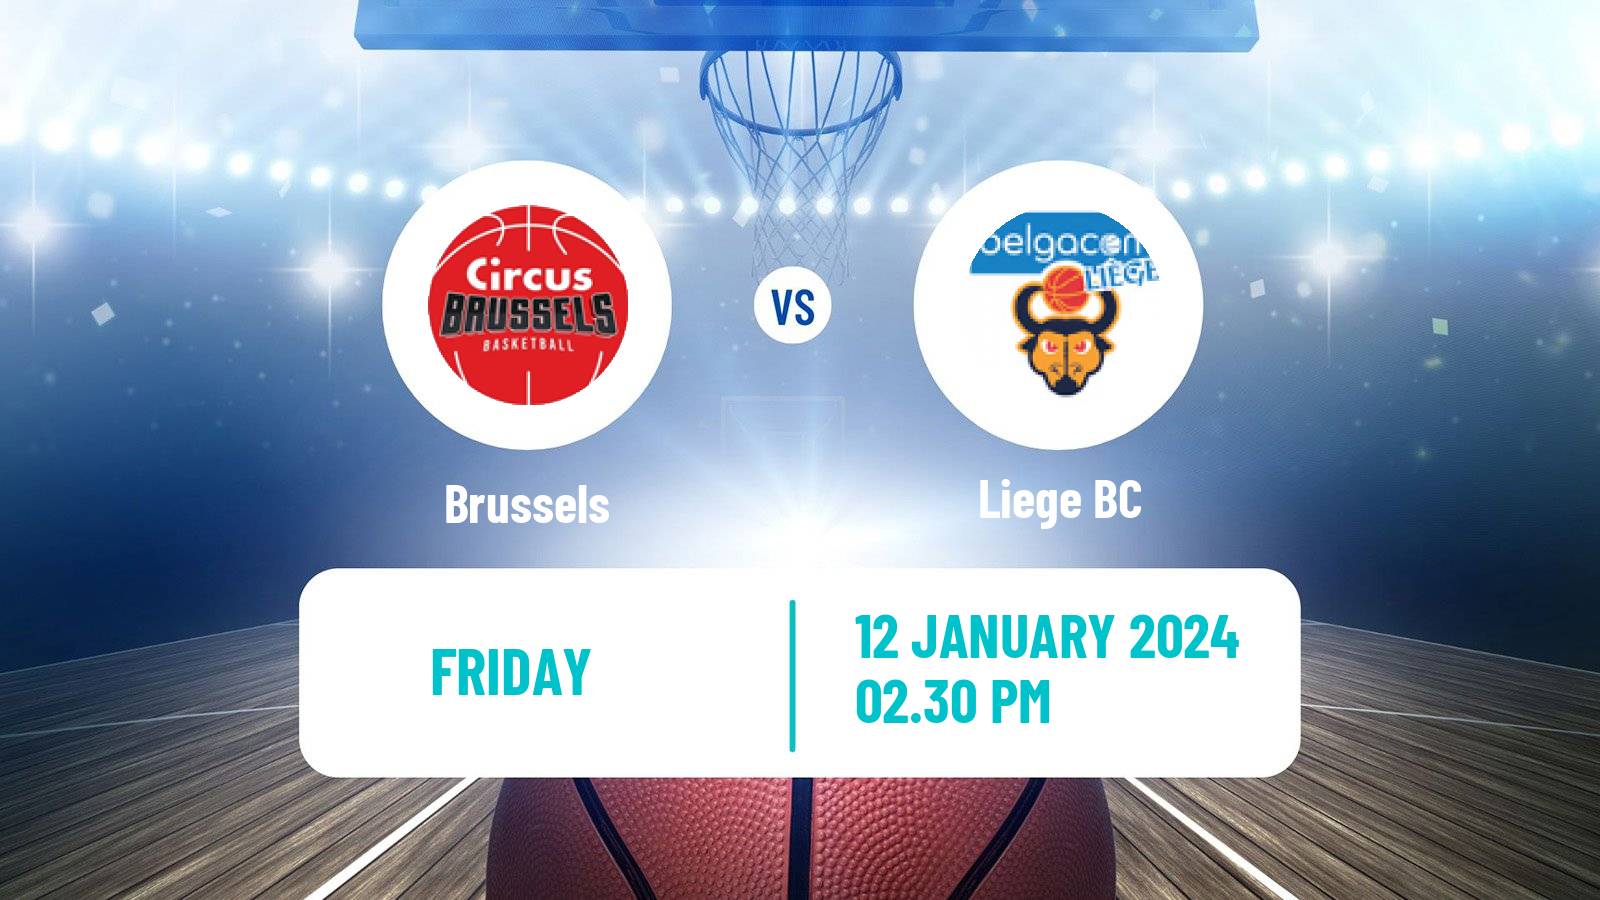 Basketball BNXT League Brussels - Liege